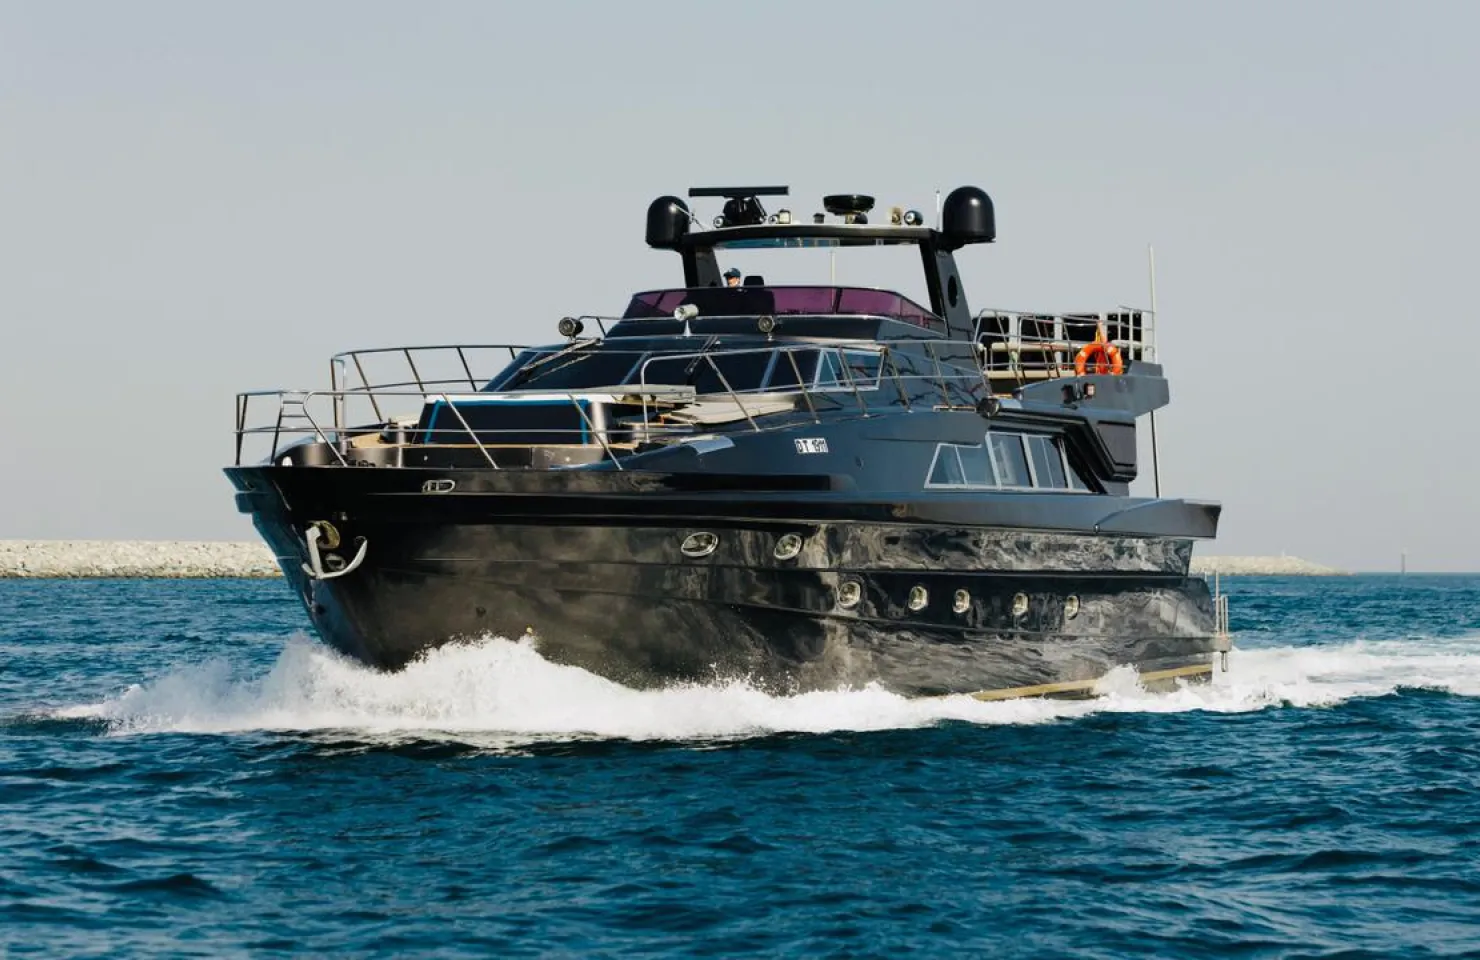 Barco Luxuoso disponível para aluguer no Dubai